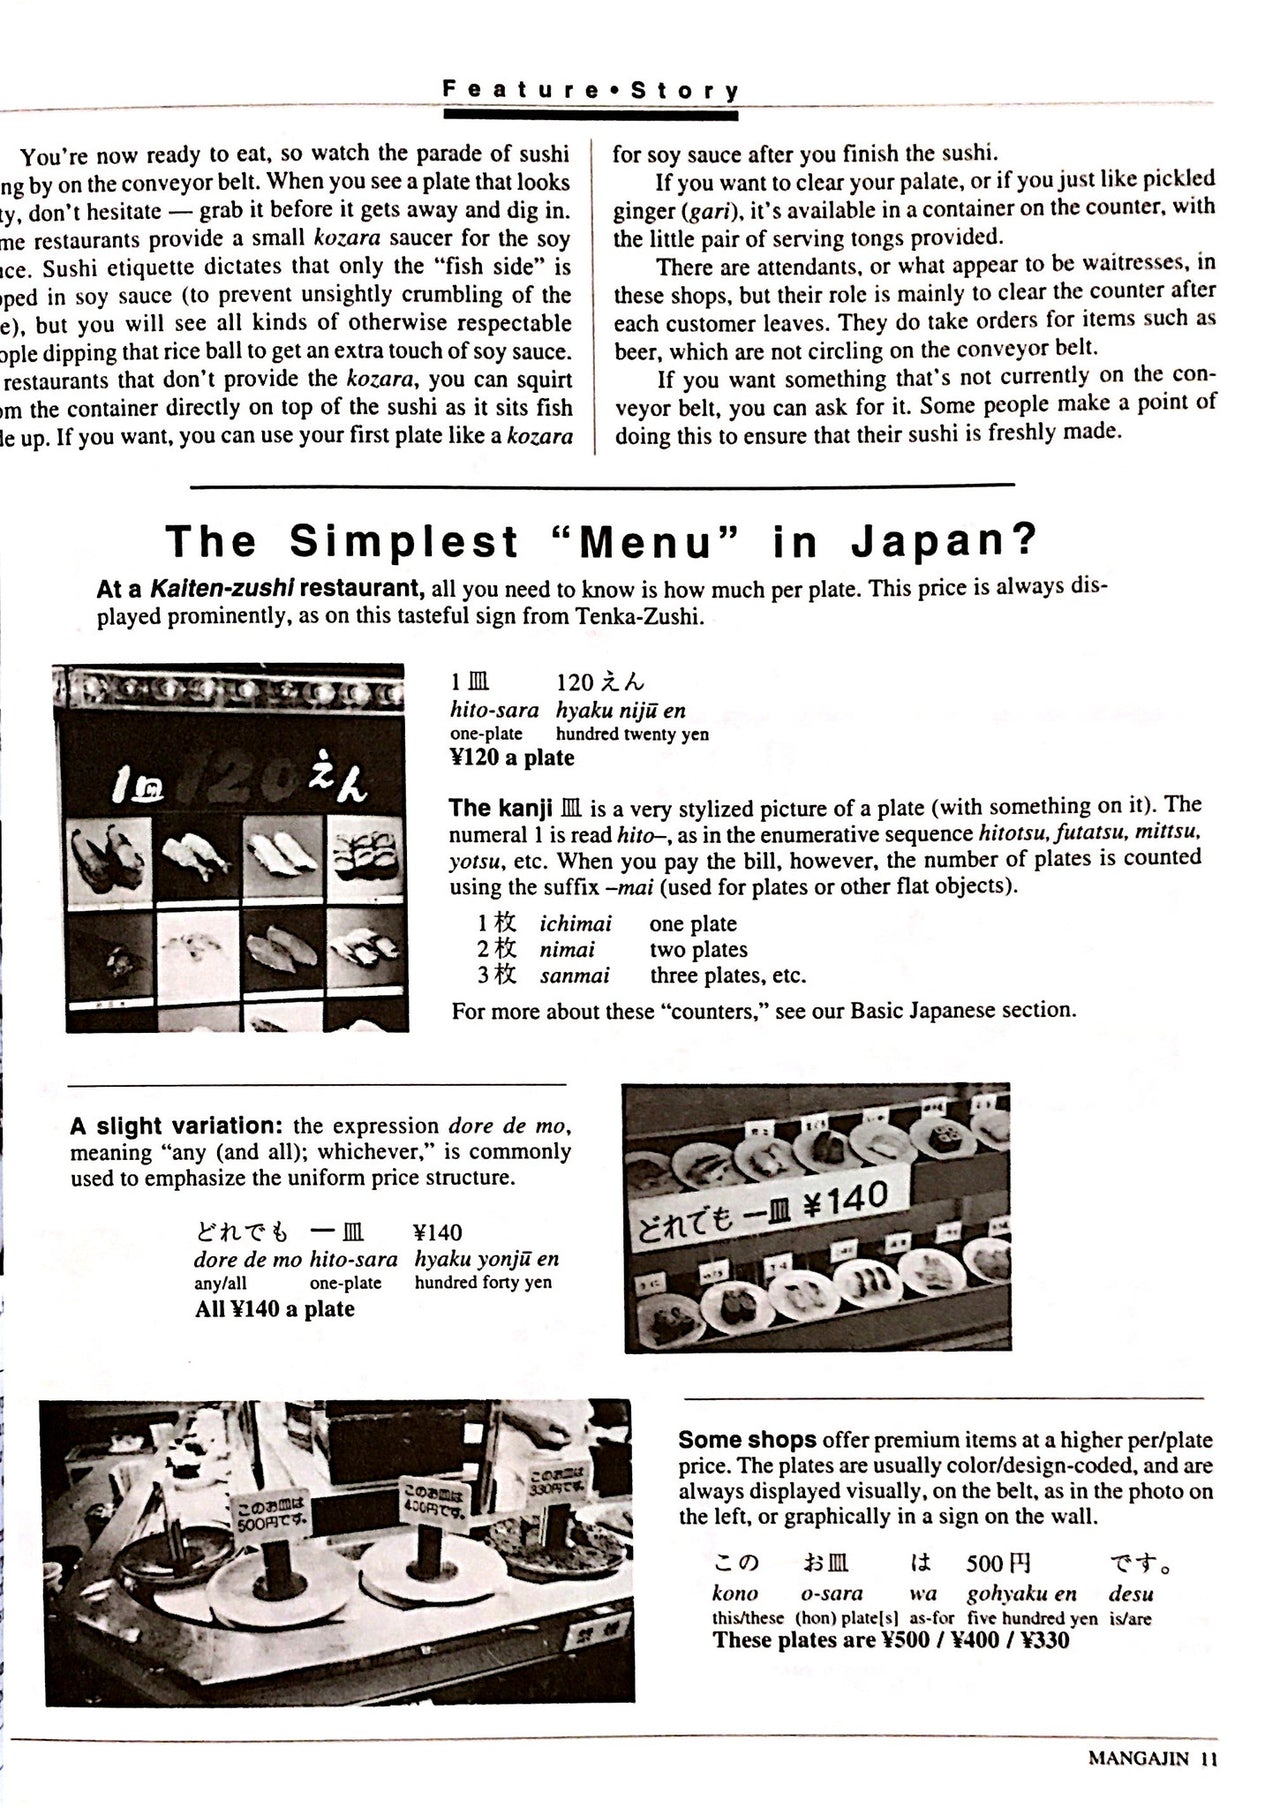 Mangajin 14 - The Japan Shop